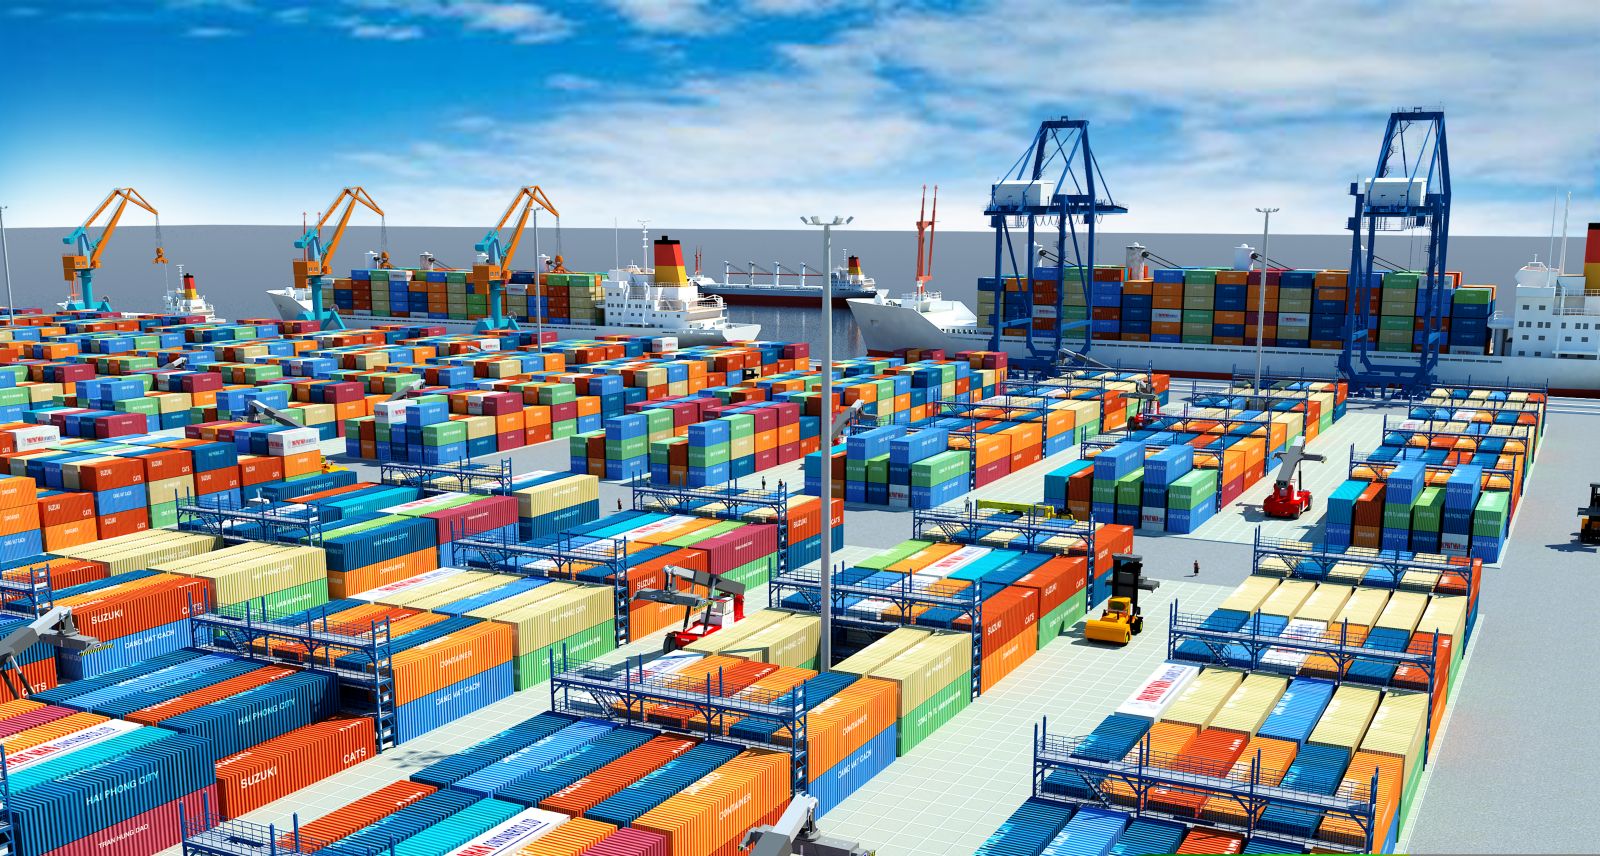 Giải pháp nâng cao chất lượng dịch vụ cho các doanh nghiệp Logistics tại Việt Nam